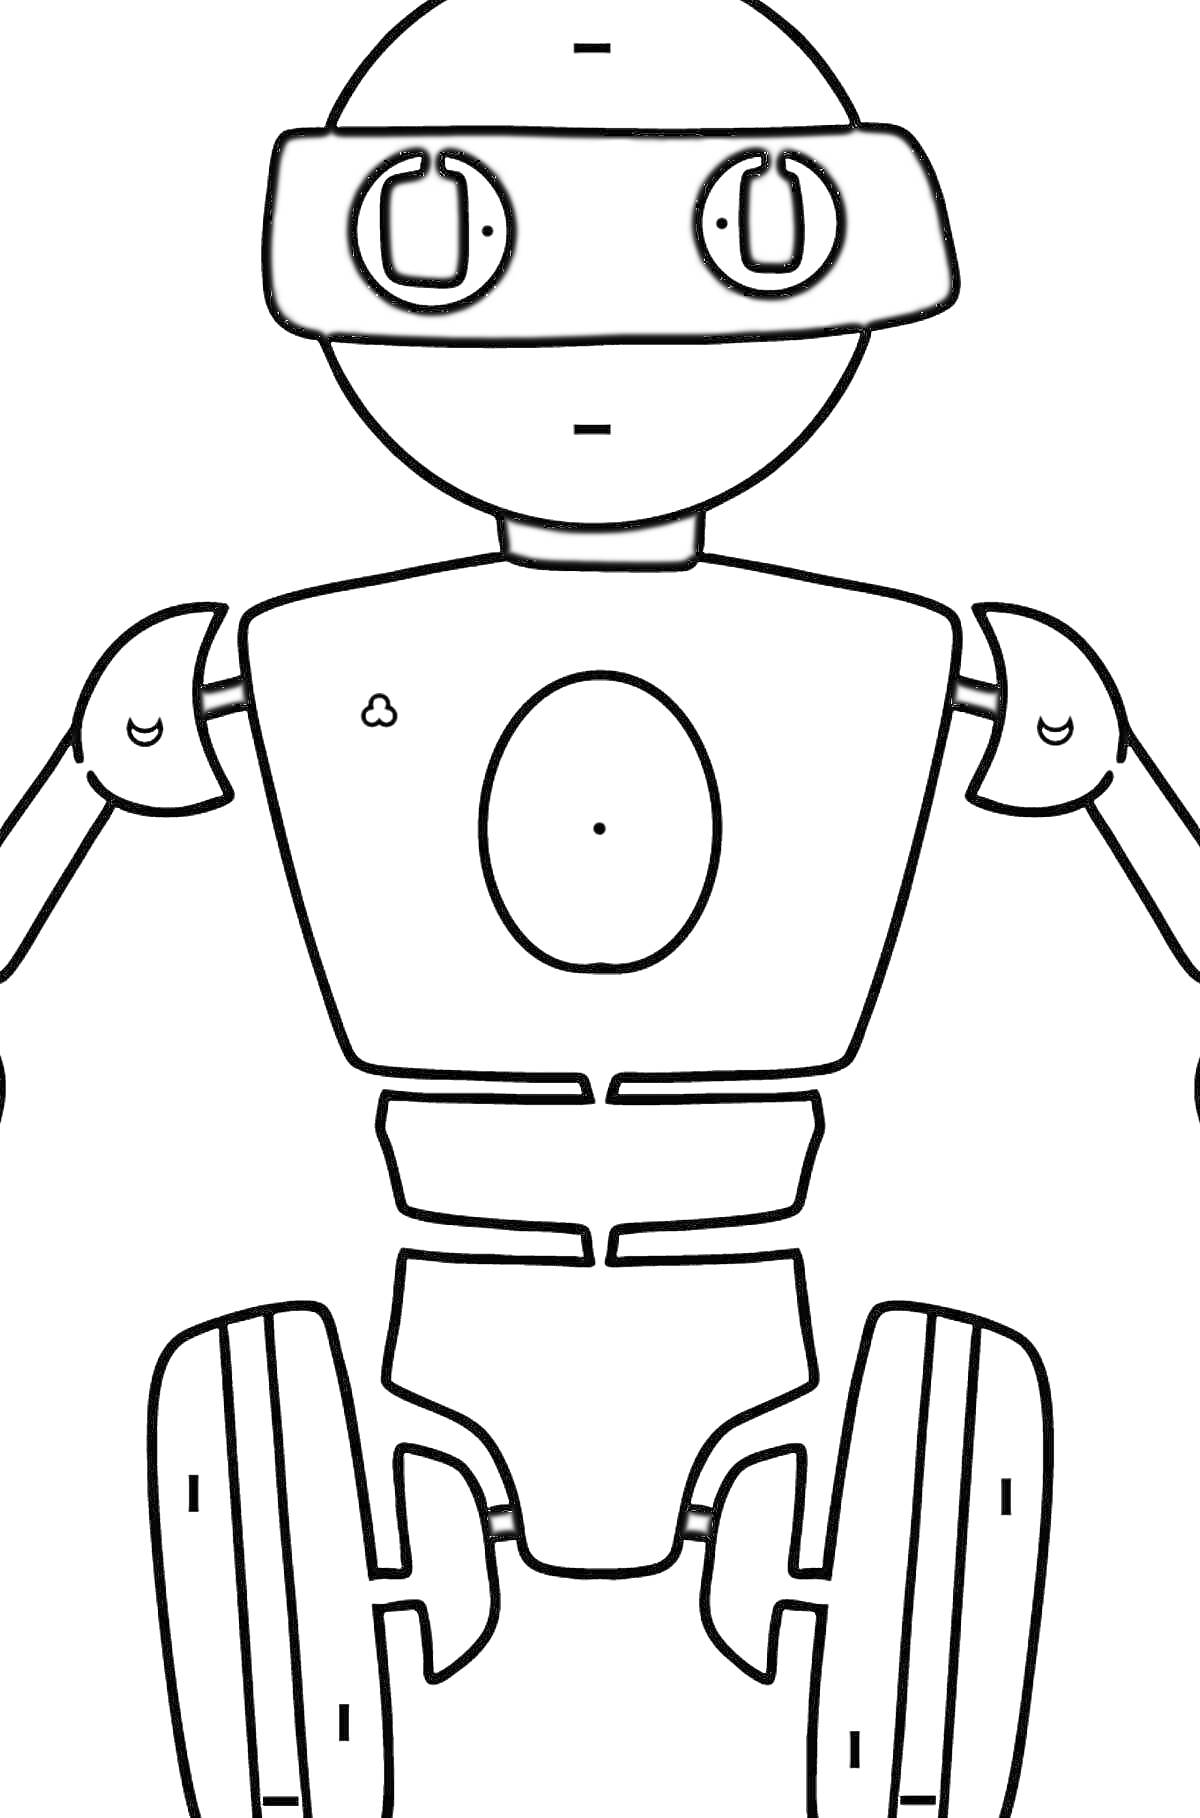 Раскраска Робот с колесами, антенной, и маской на глазах